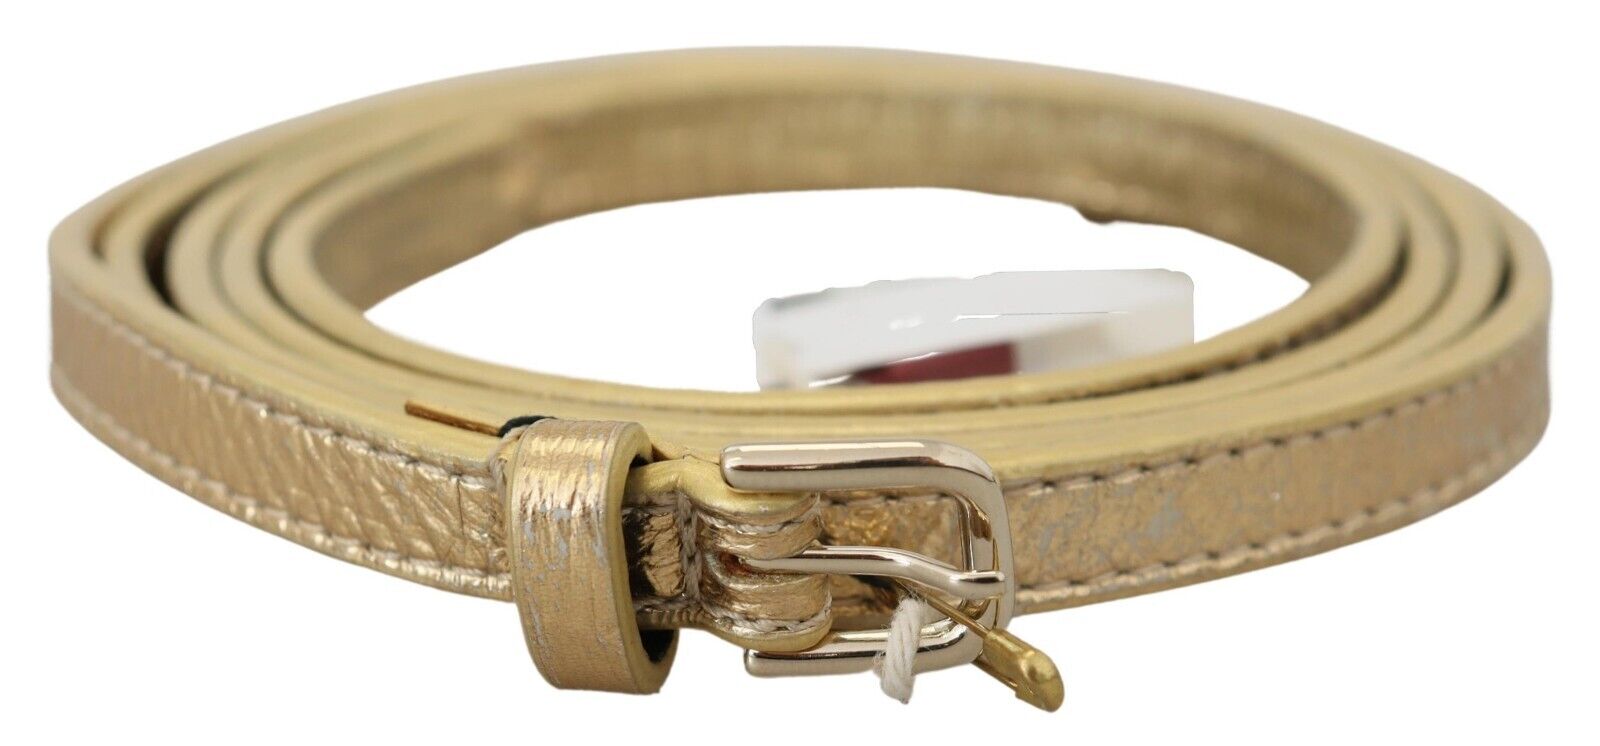 Ремень DRIES VANNOTEN Золотая кожа с тонкой серебряной пряжкой Cintura s.90см / 36 дюймов $200